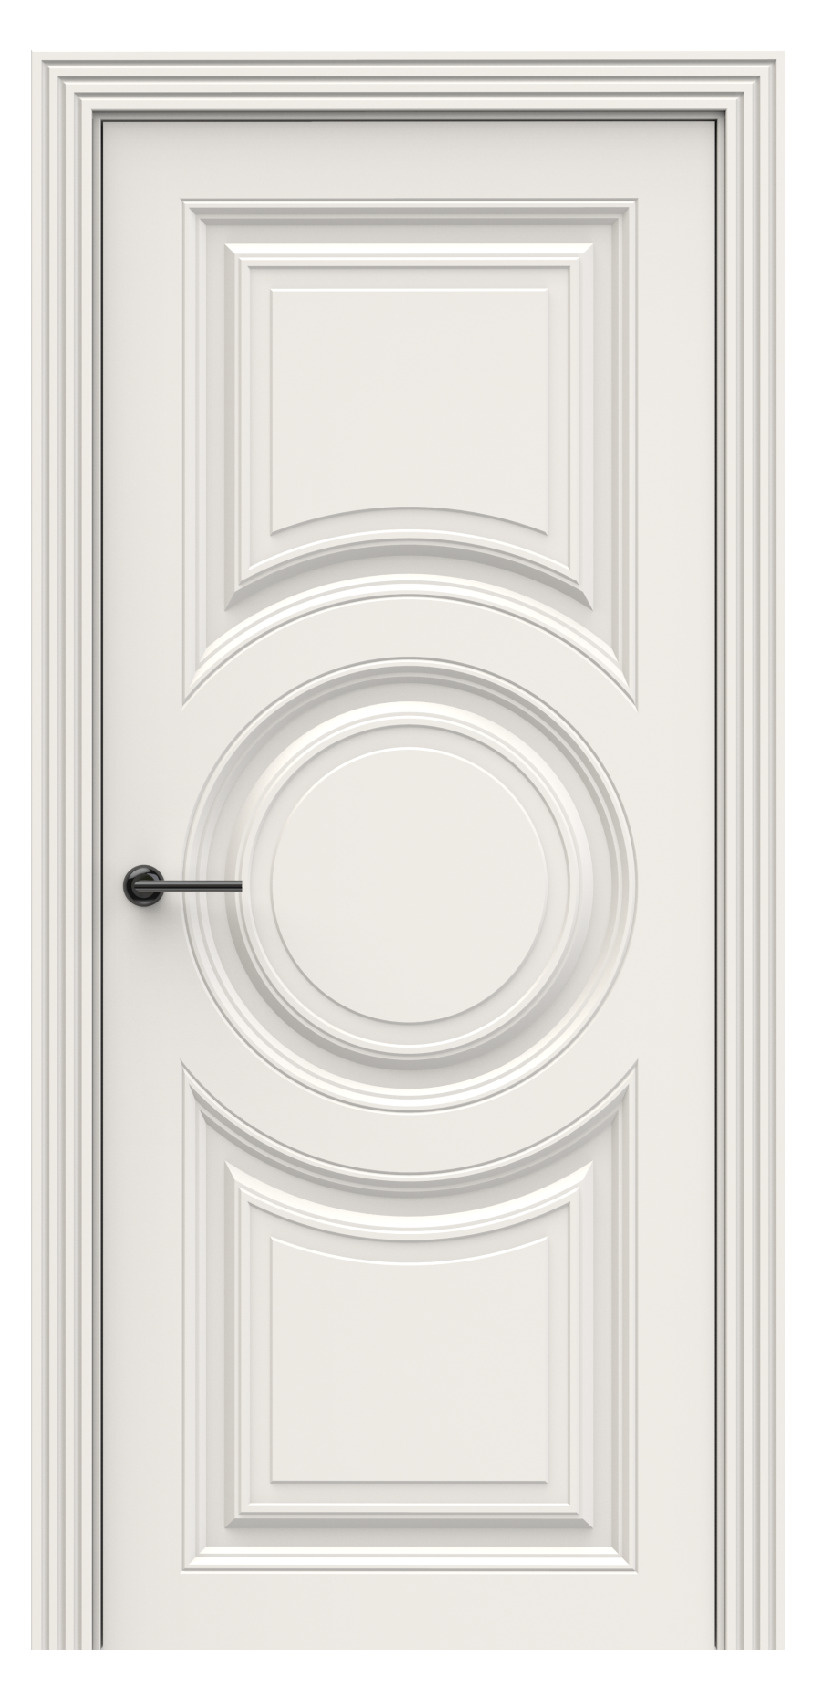 Questdoors Межкомнатная дверь QBR18, арт. 17931 - фото №1